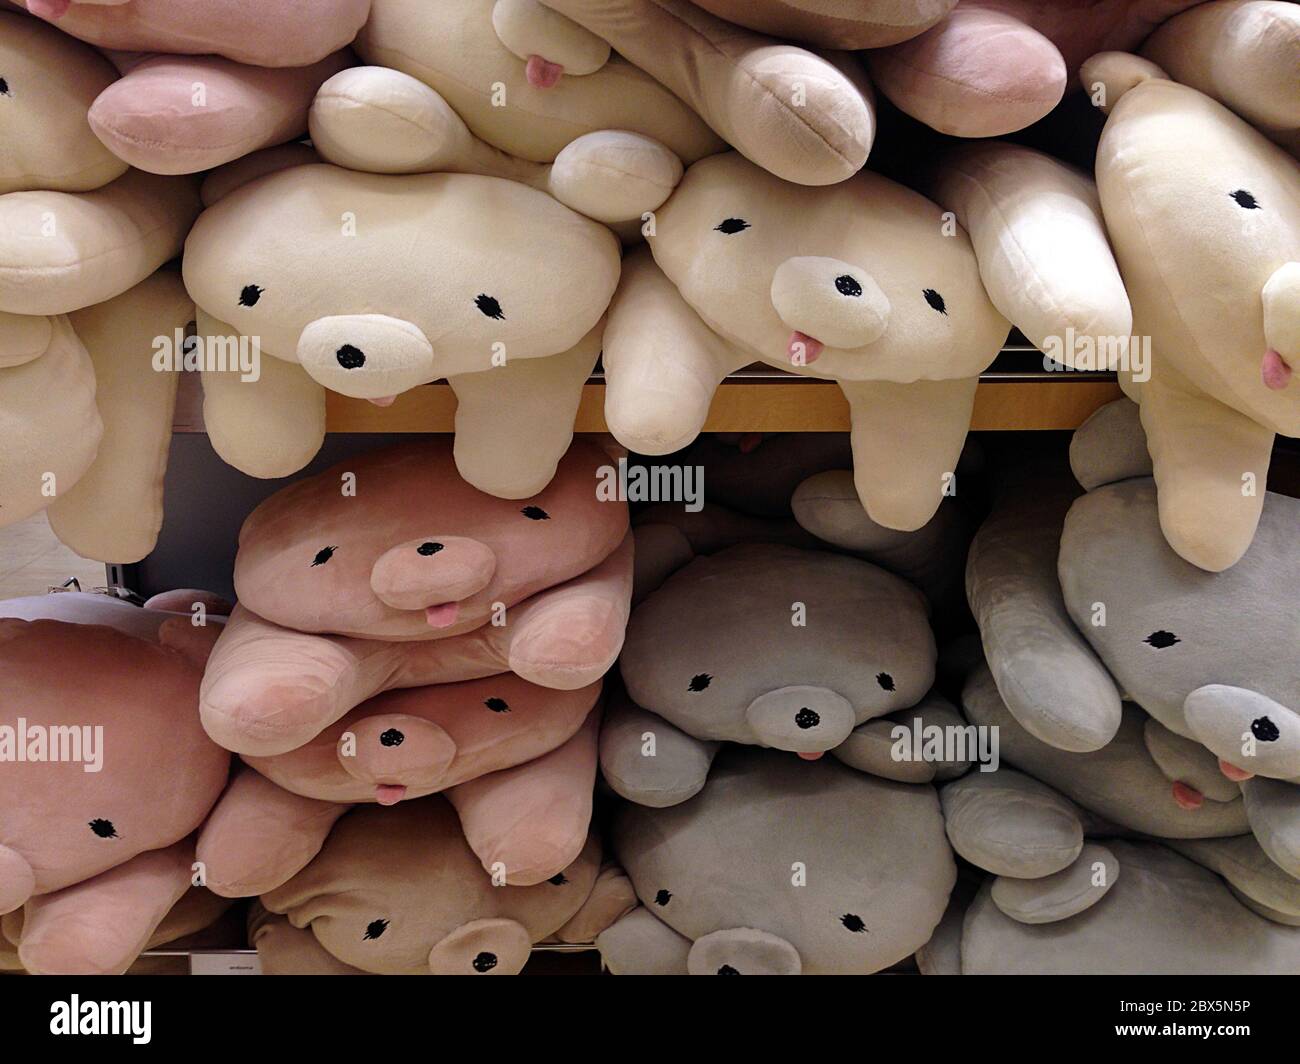 Muchos animales peludos de oso/perro con divertidas expresiones faciales en colores pastel en la tienda japonesa. Foto de stock